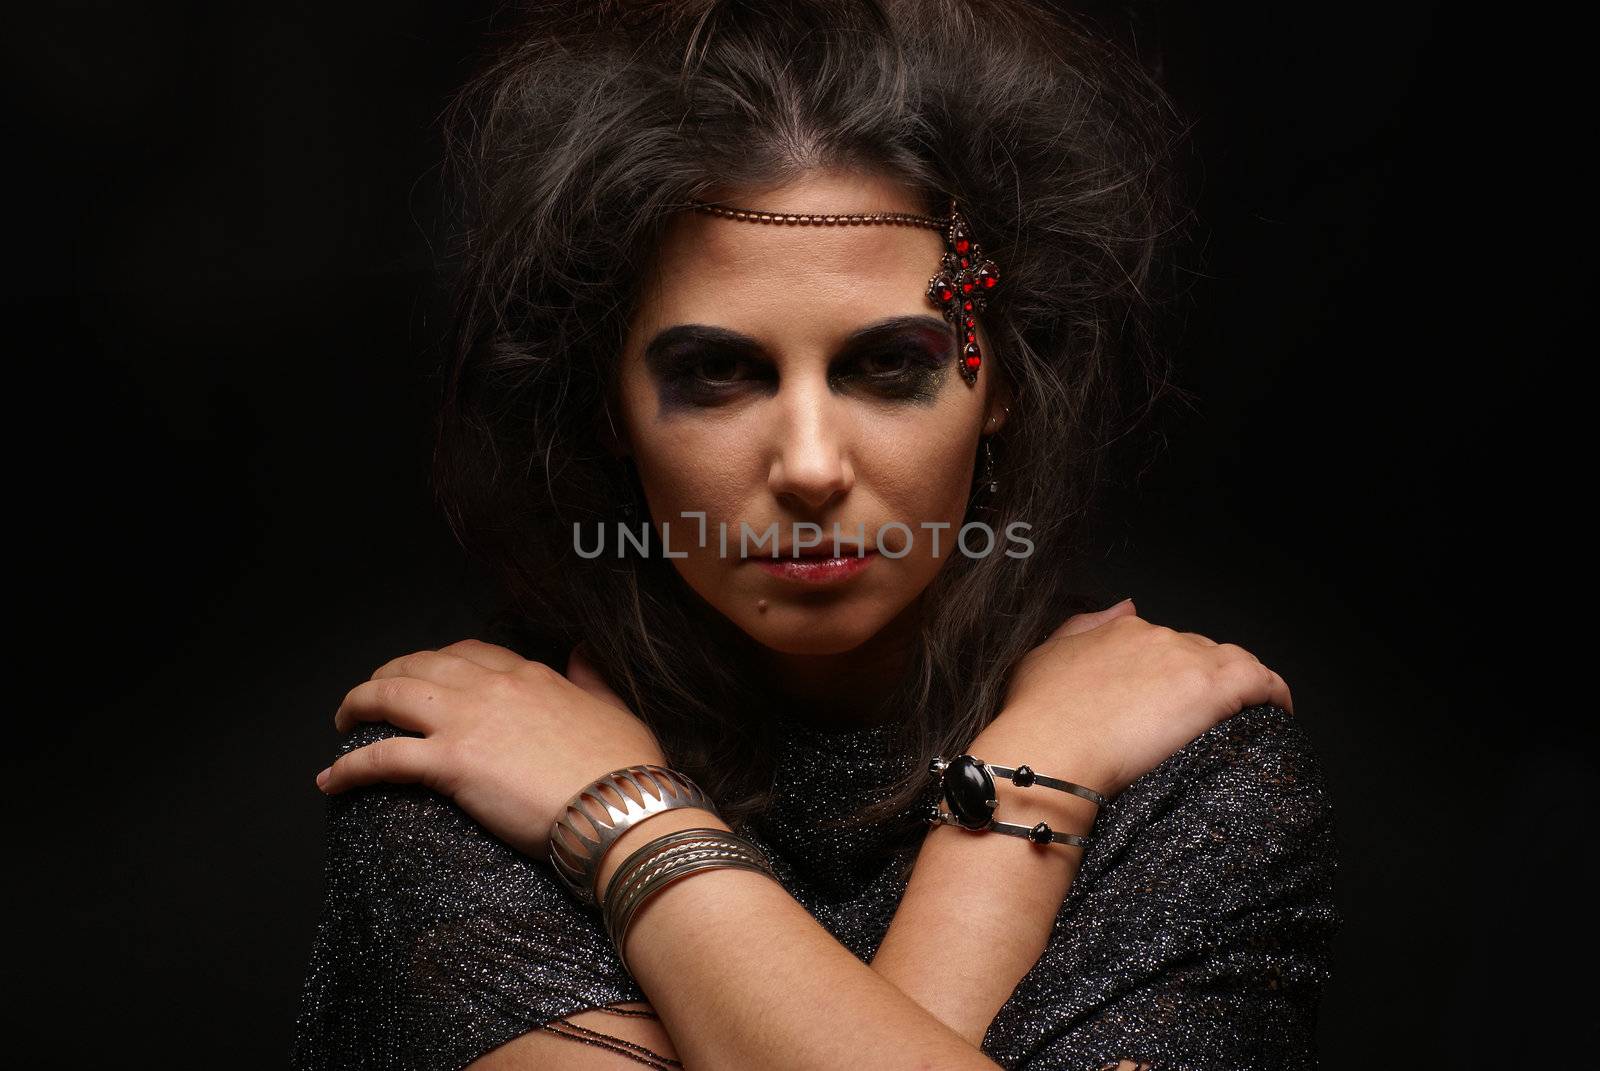 Portrait of witch over dark background by shmeljov